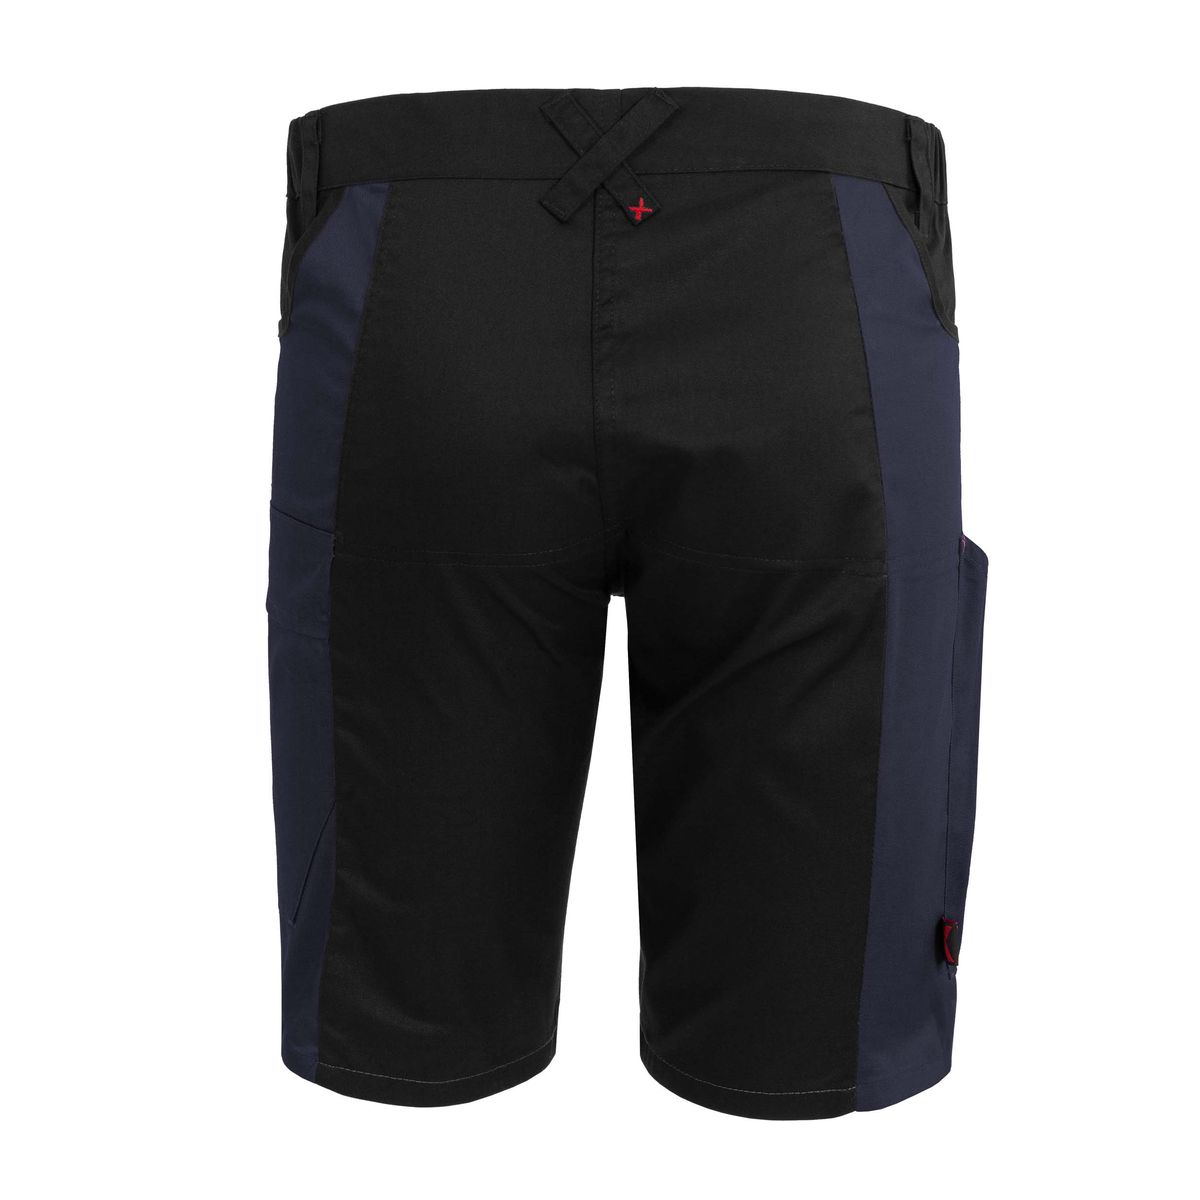 X-Serie Shorts marine/schwarz 